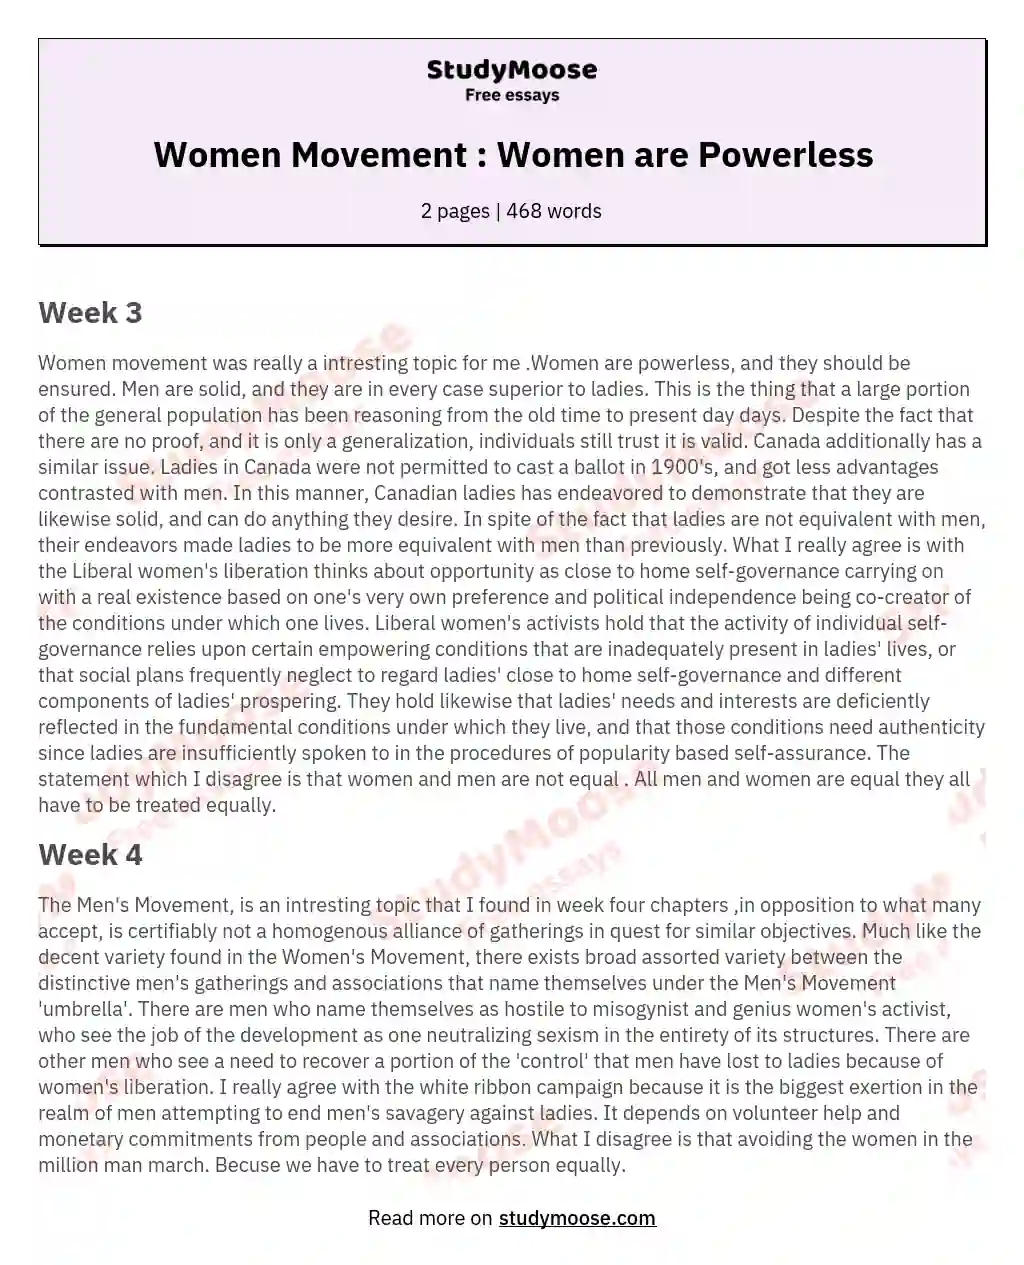 Women Movement : Women are Powerless